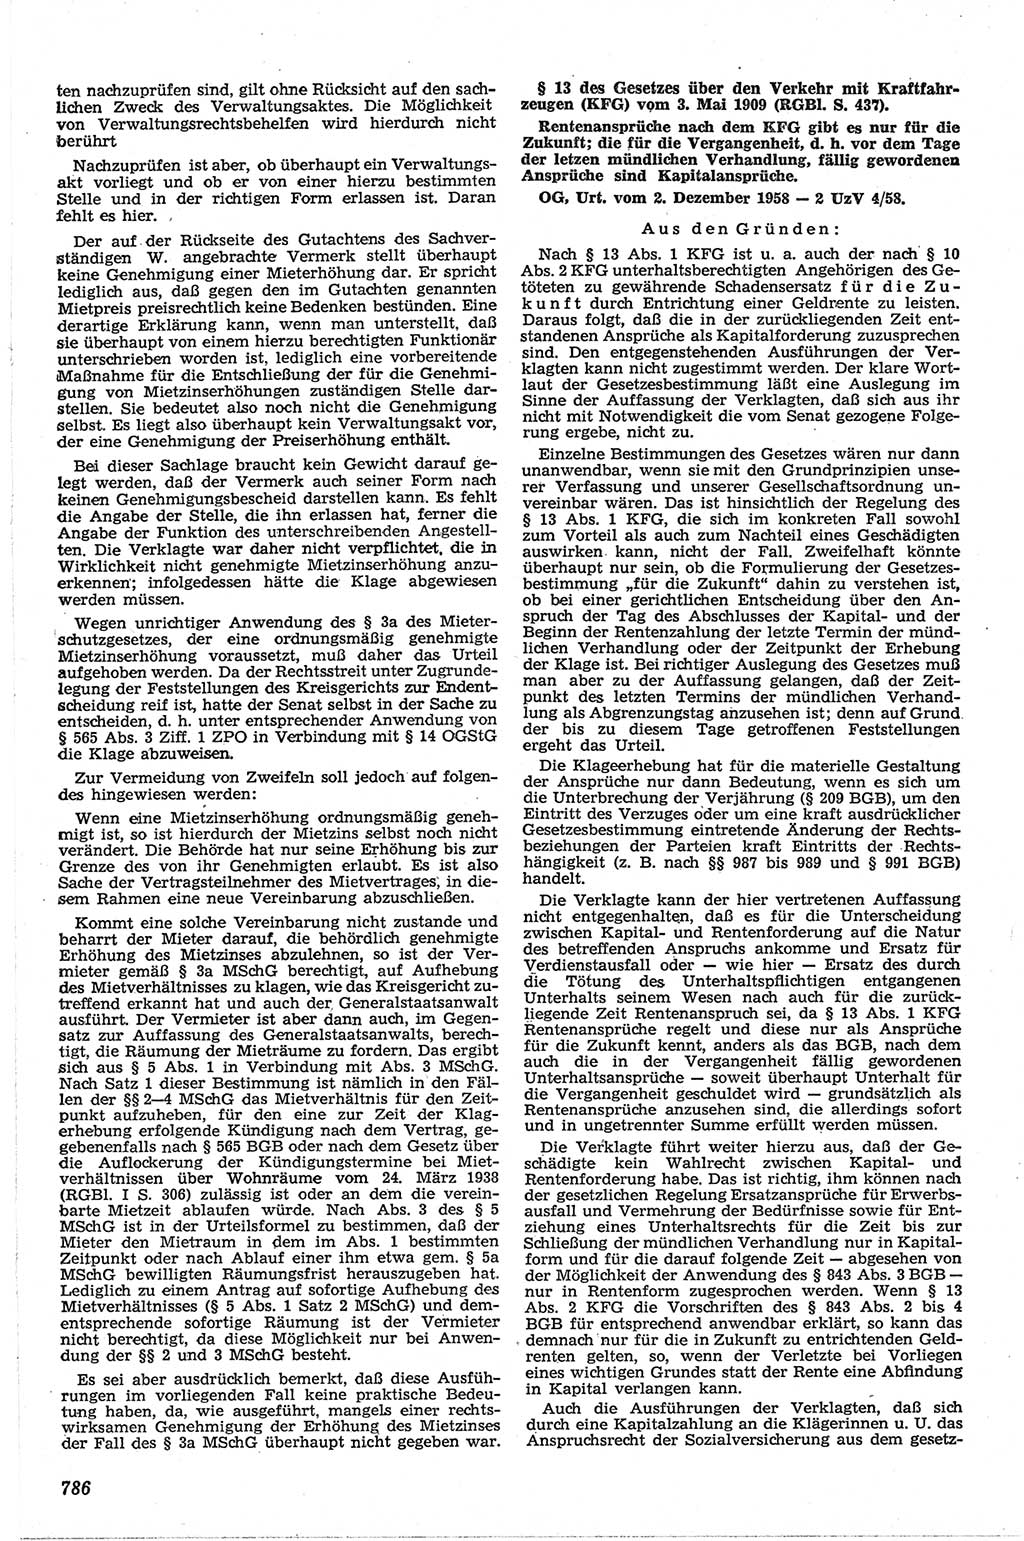 Neue Justiz (NJ), Zeitschrift für Recht und Rechtswissenschaft [Deutsche Demokratische Republik (DDR)], 13. Jahrgang 1959, Seite 786 (NJ DDR 1959, S. 786)